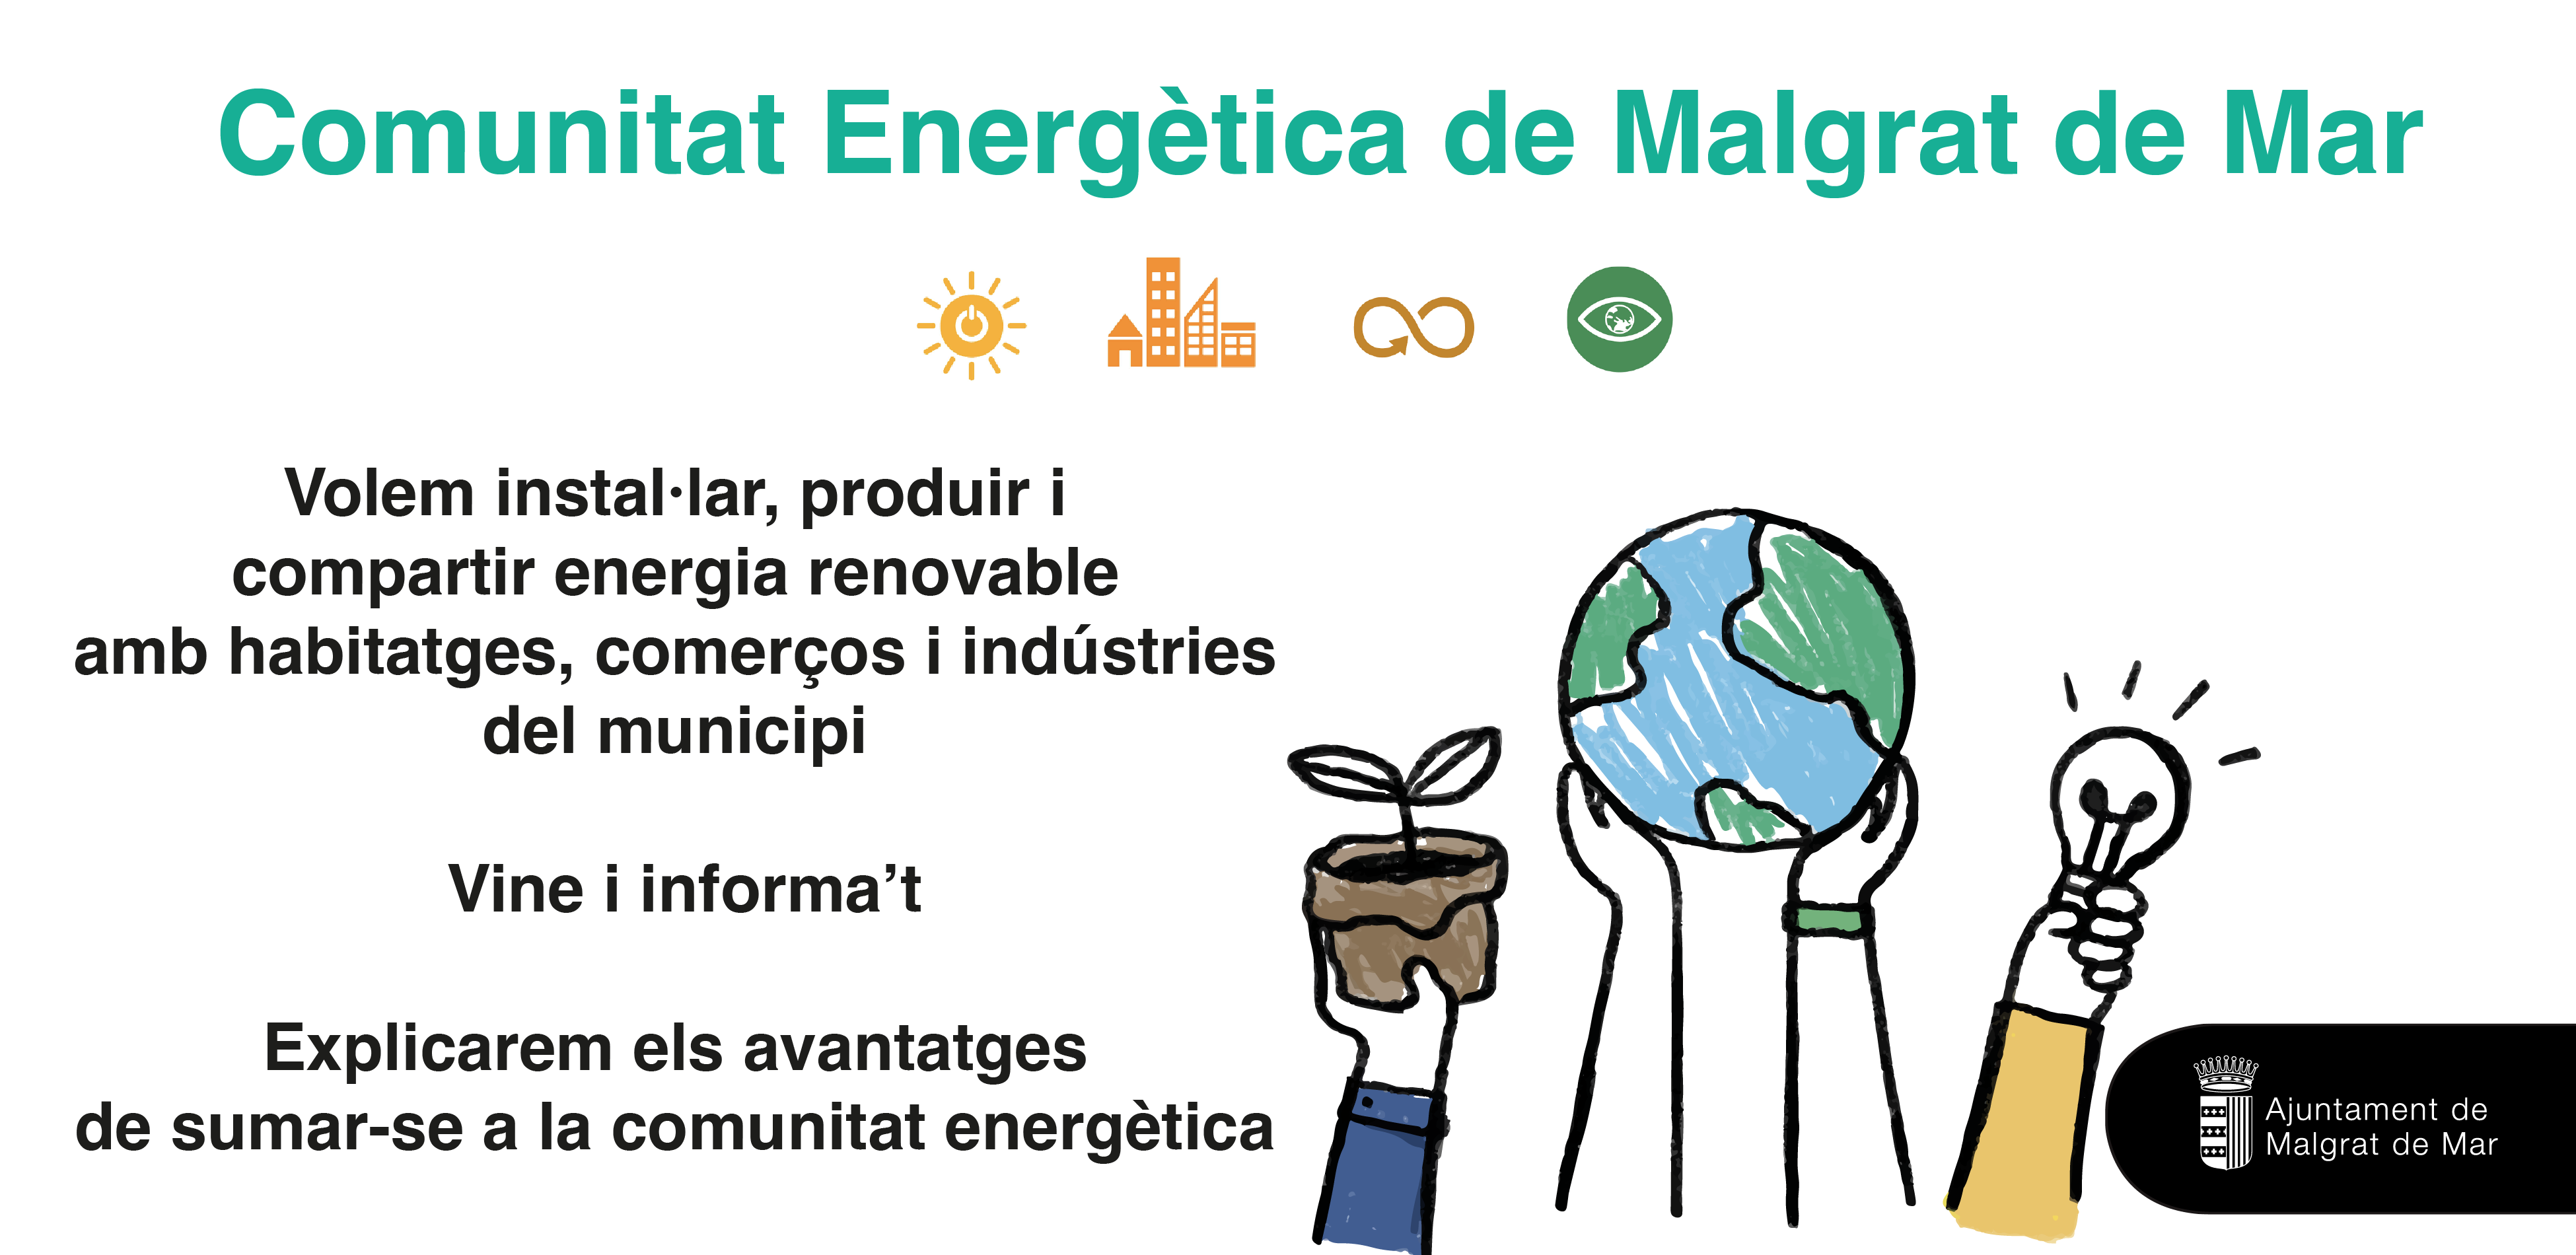 Sessió informativa i taller participatiu per a la creació d'una comunitat energètica a Malgrat, demà